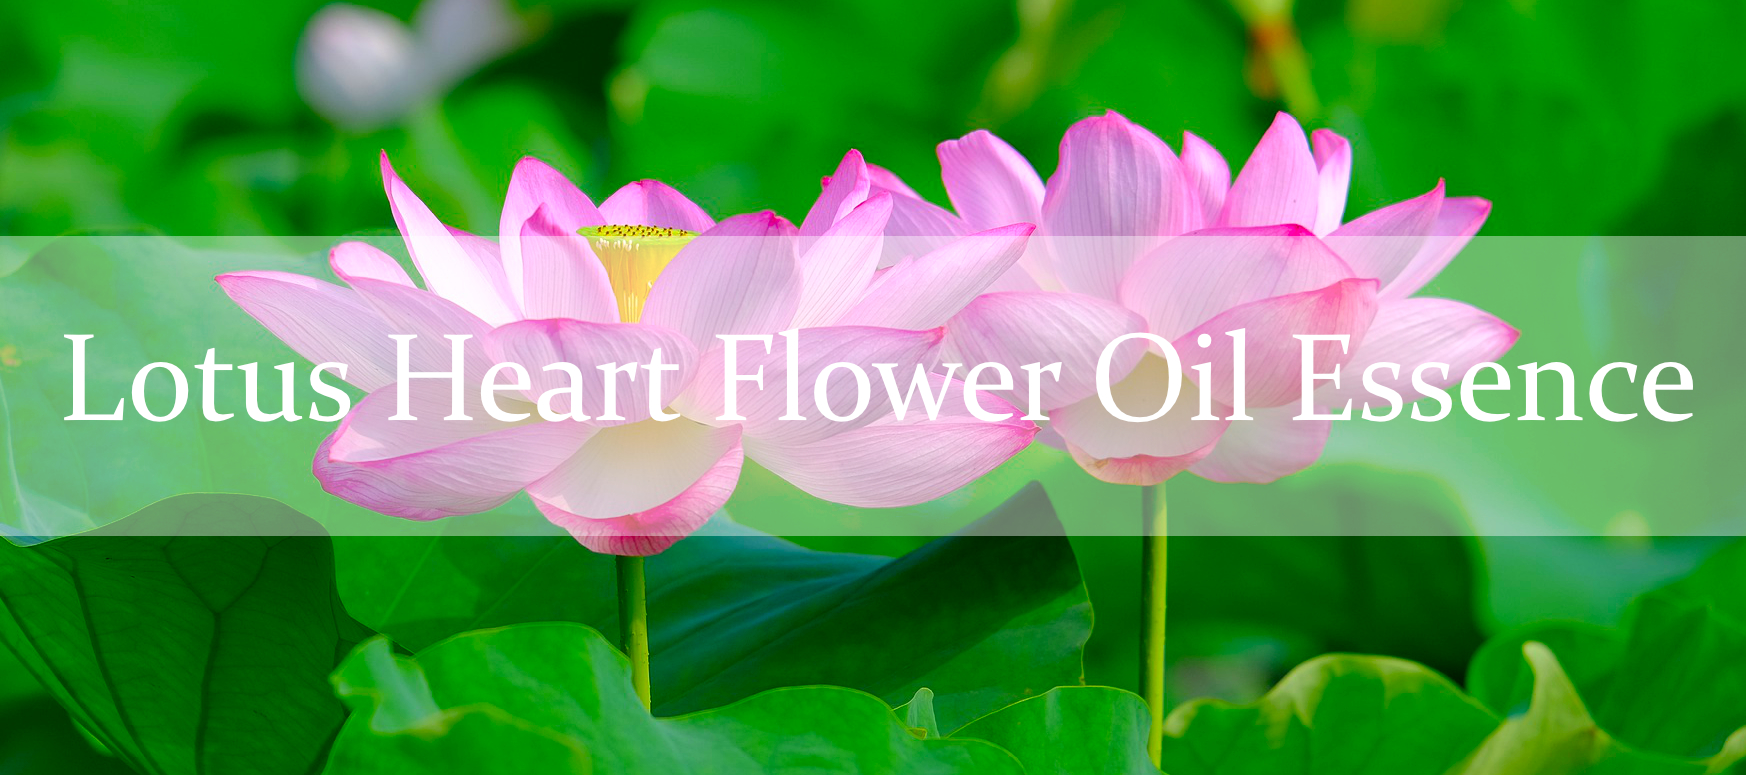 Slideshowbild Lotus Heart Flower Oil Essence